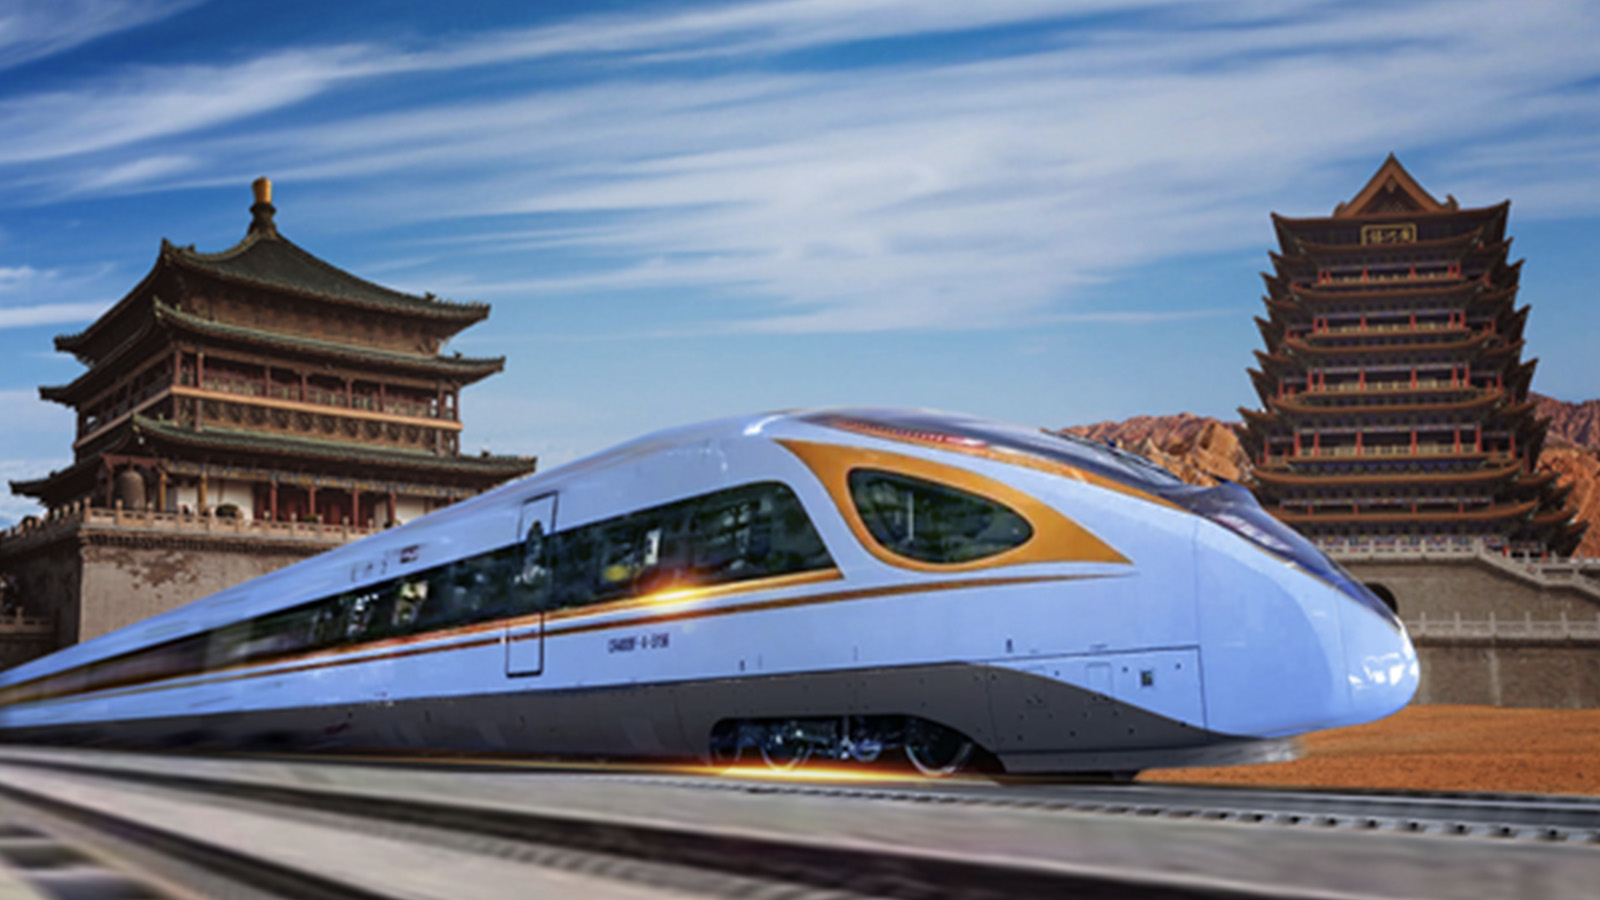 चीनलाई भारी बन्दै बुलेट ट्रेन, अत्यधिक विकास अर्थतन्त्रका लागि घातक !